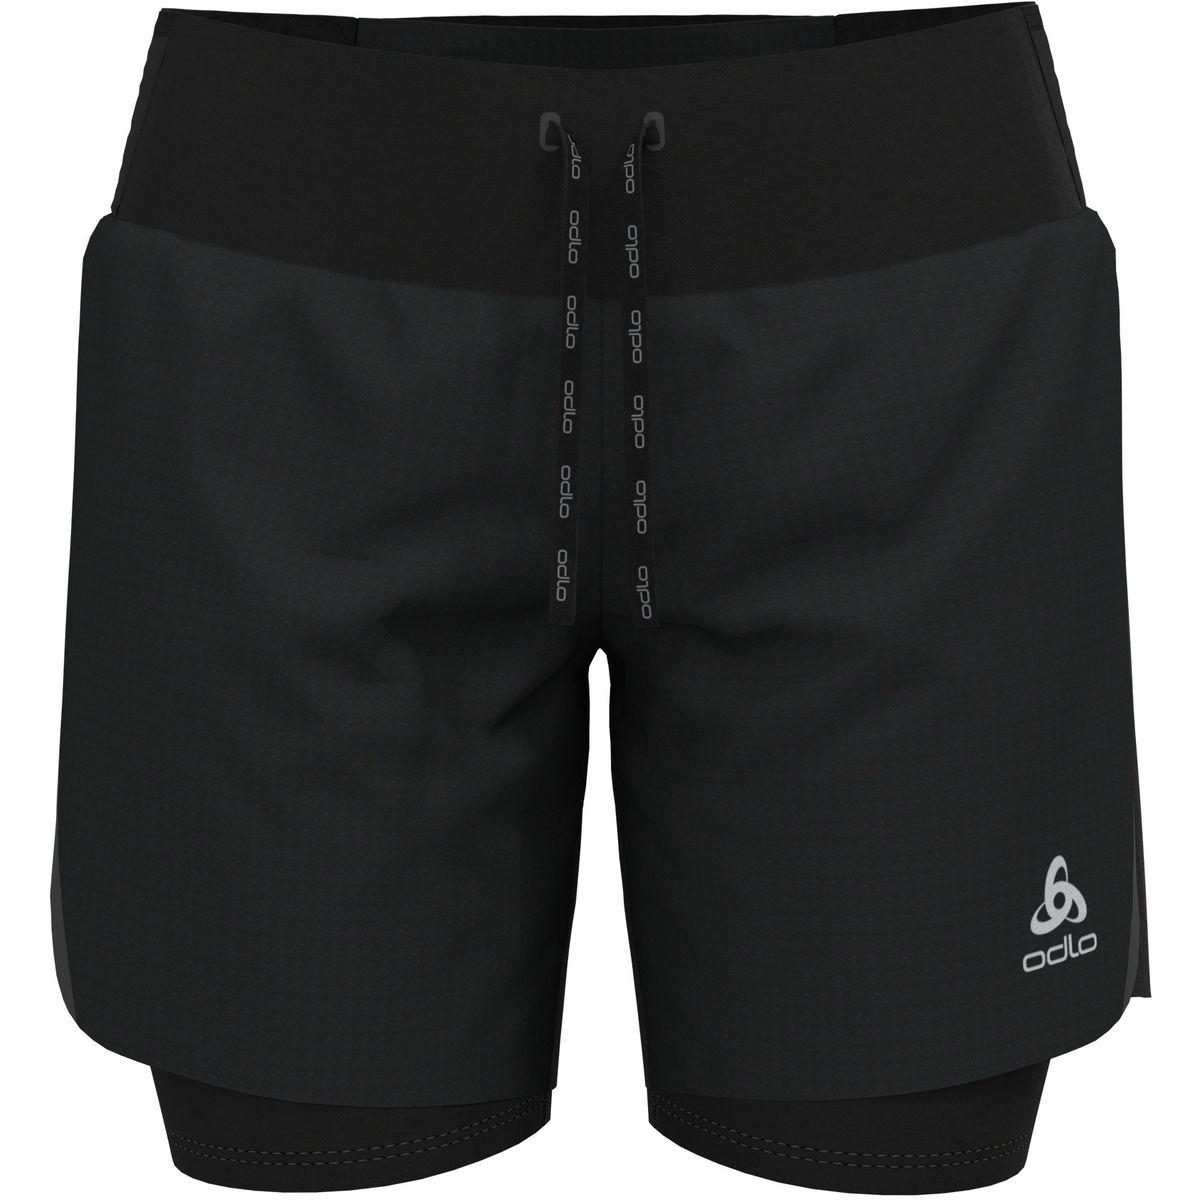 Odlo 2-In-1 Axalp Trail Damen Shorts